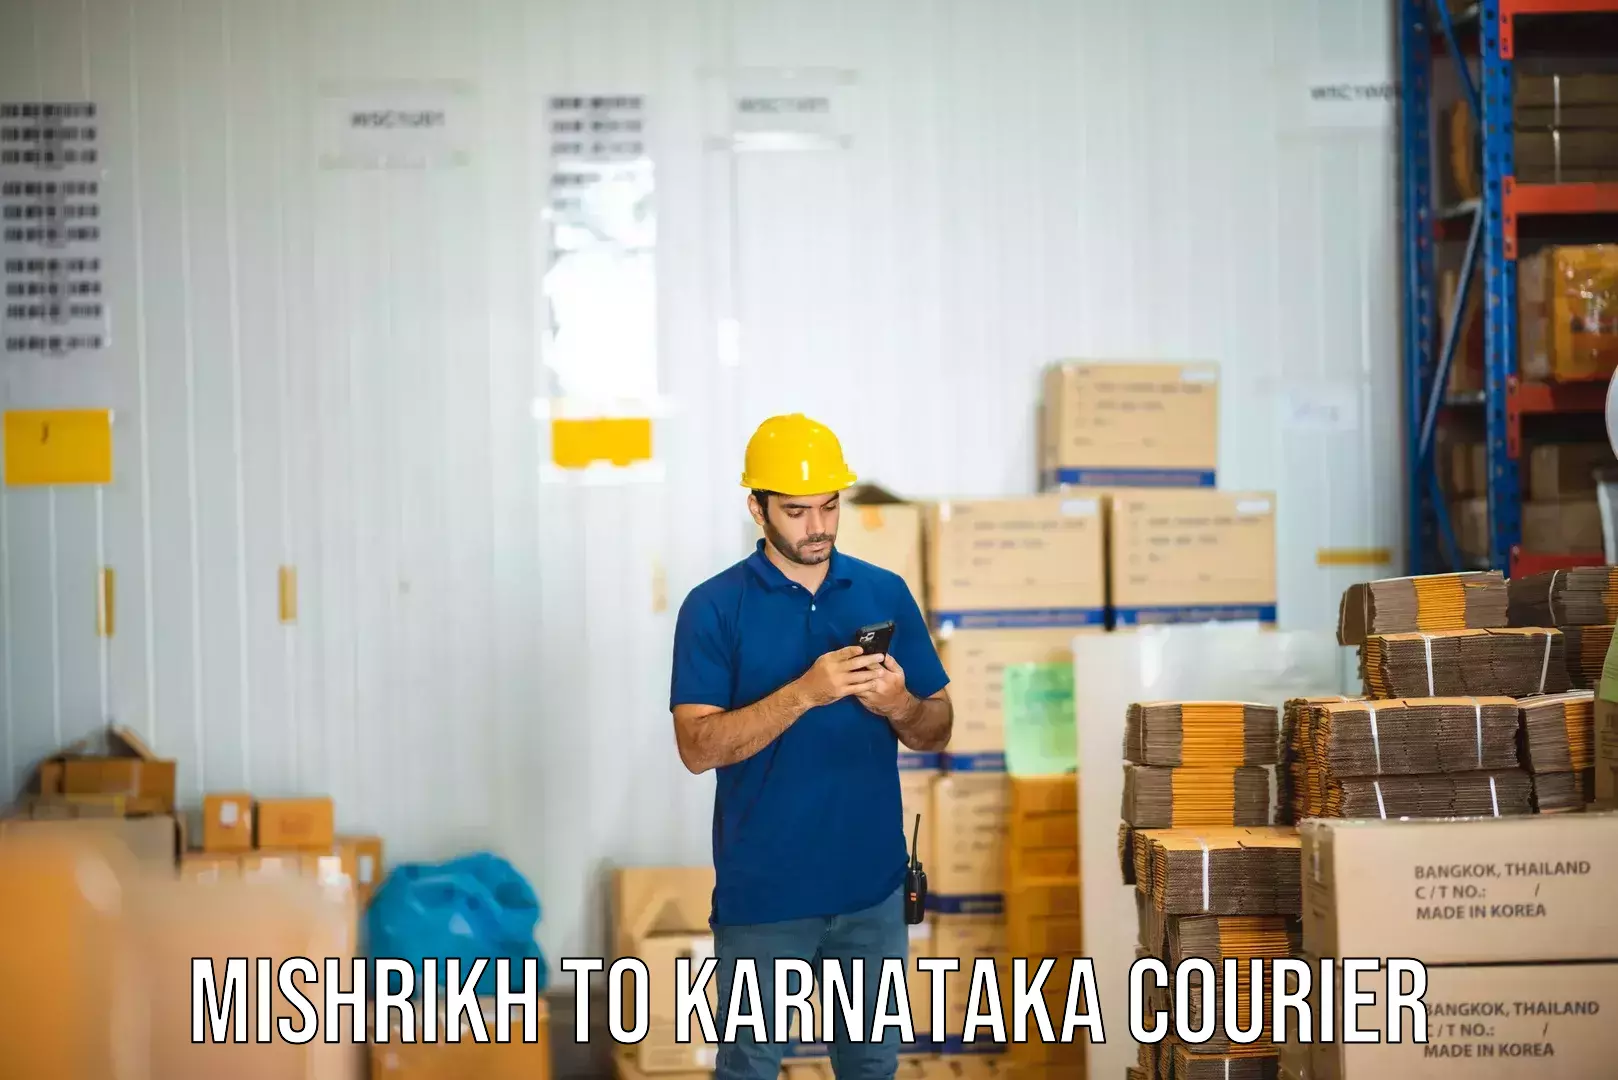 Efficient parcel tracking Mishrikh to Bangalore